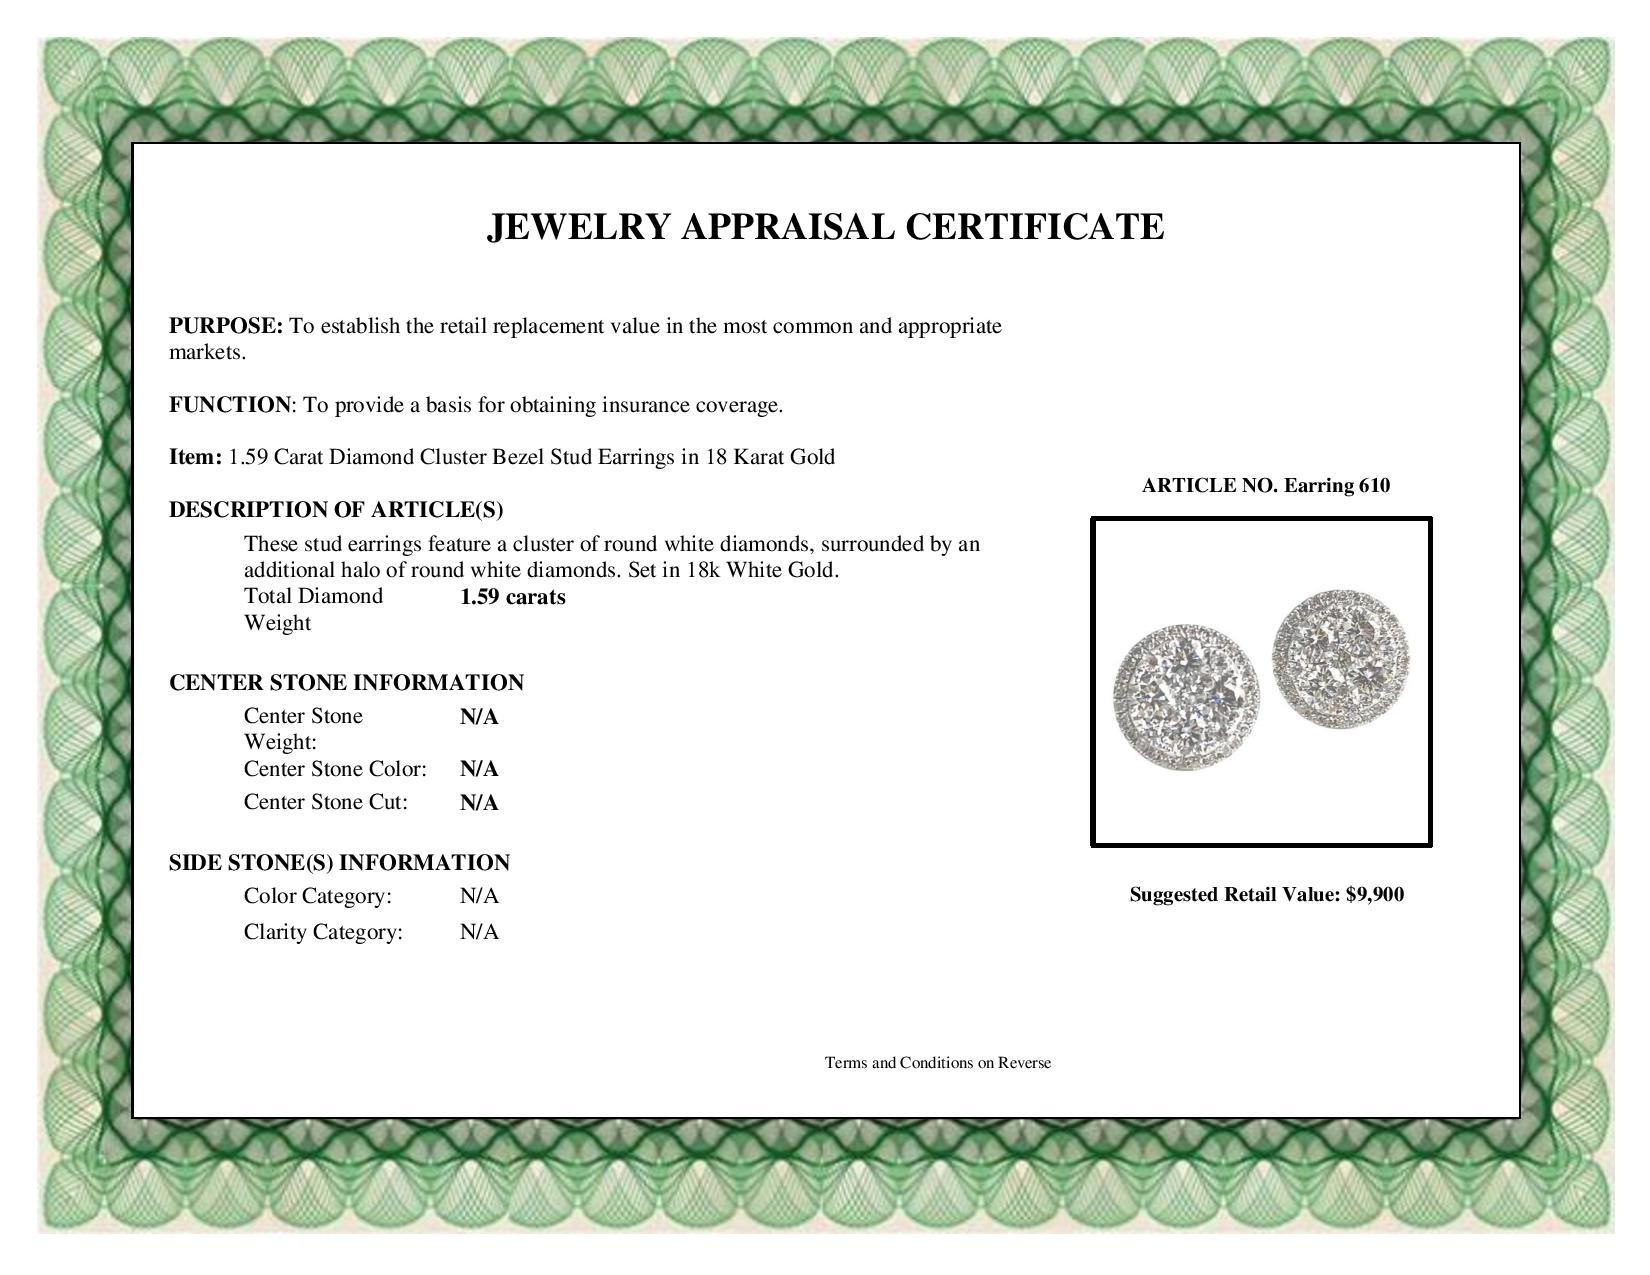 Women's DiamondTown 1.59 Carat Diamond Cluster Bezel Stud Earrings in 18 Karat Gold